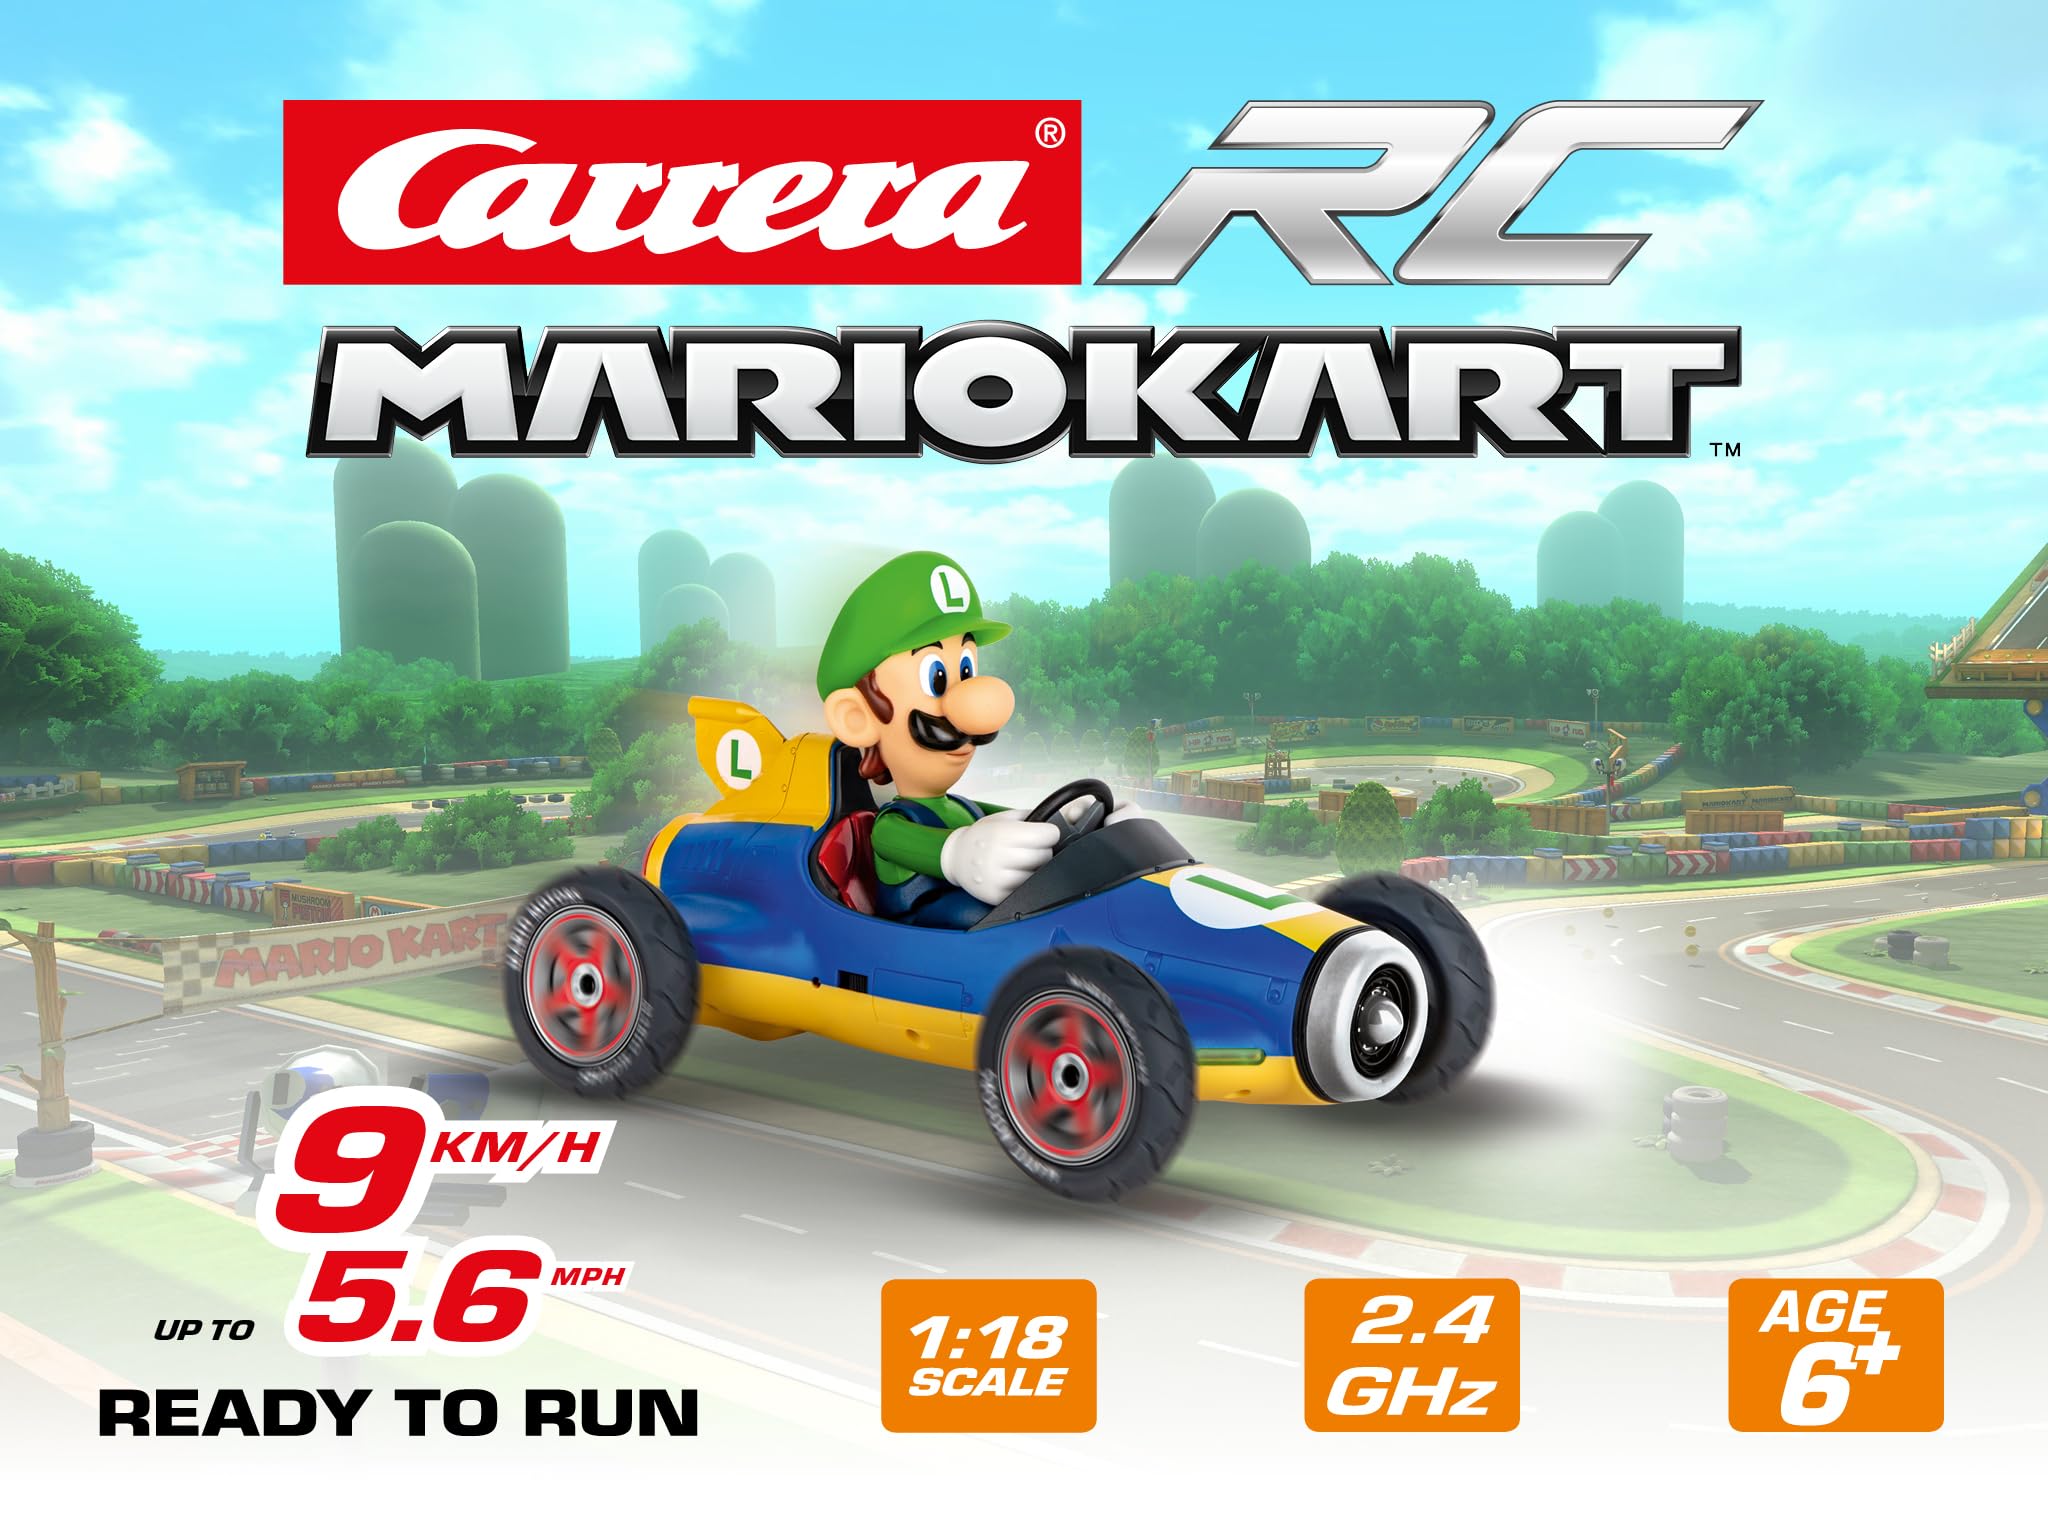 Carrera RC Nintendo Mario Kart Mach 8 mit Luigi I ferngesteuertes Auto ab 6 Jahren für drinnen & draußen I Mini Mario Kart mit Fernbedienung zum Mitnehmen I Spielzeug für Kinder & Erwachsene